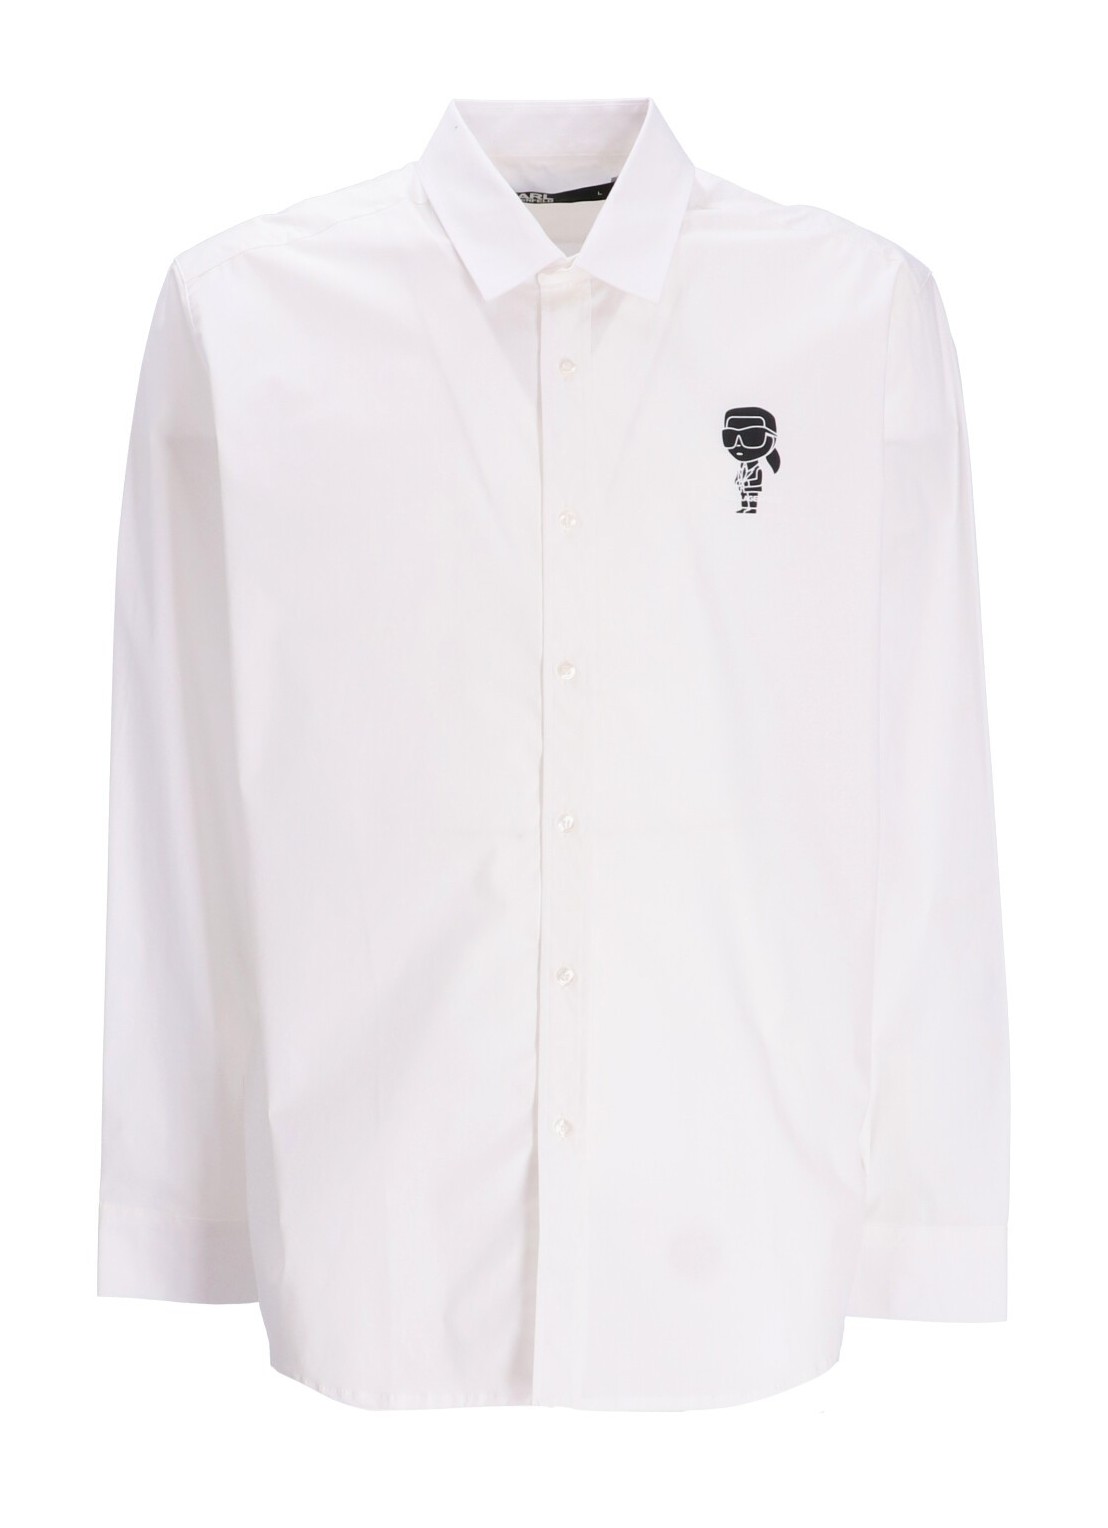 Camiseria karl lagerfeld shirt man shirt casual 605982531600 10 talla XL
 